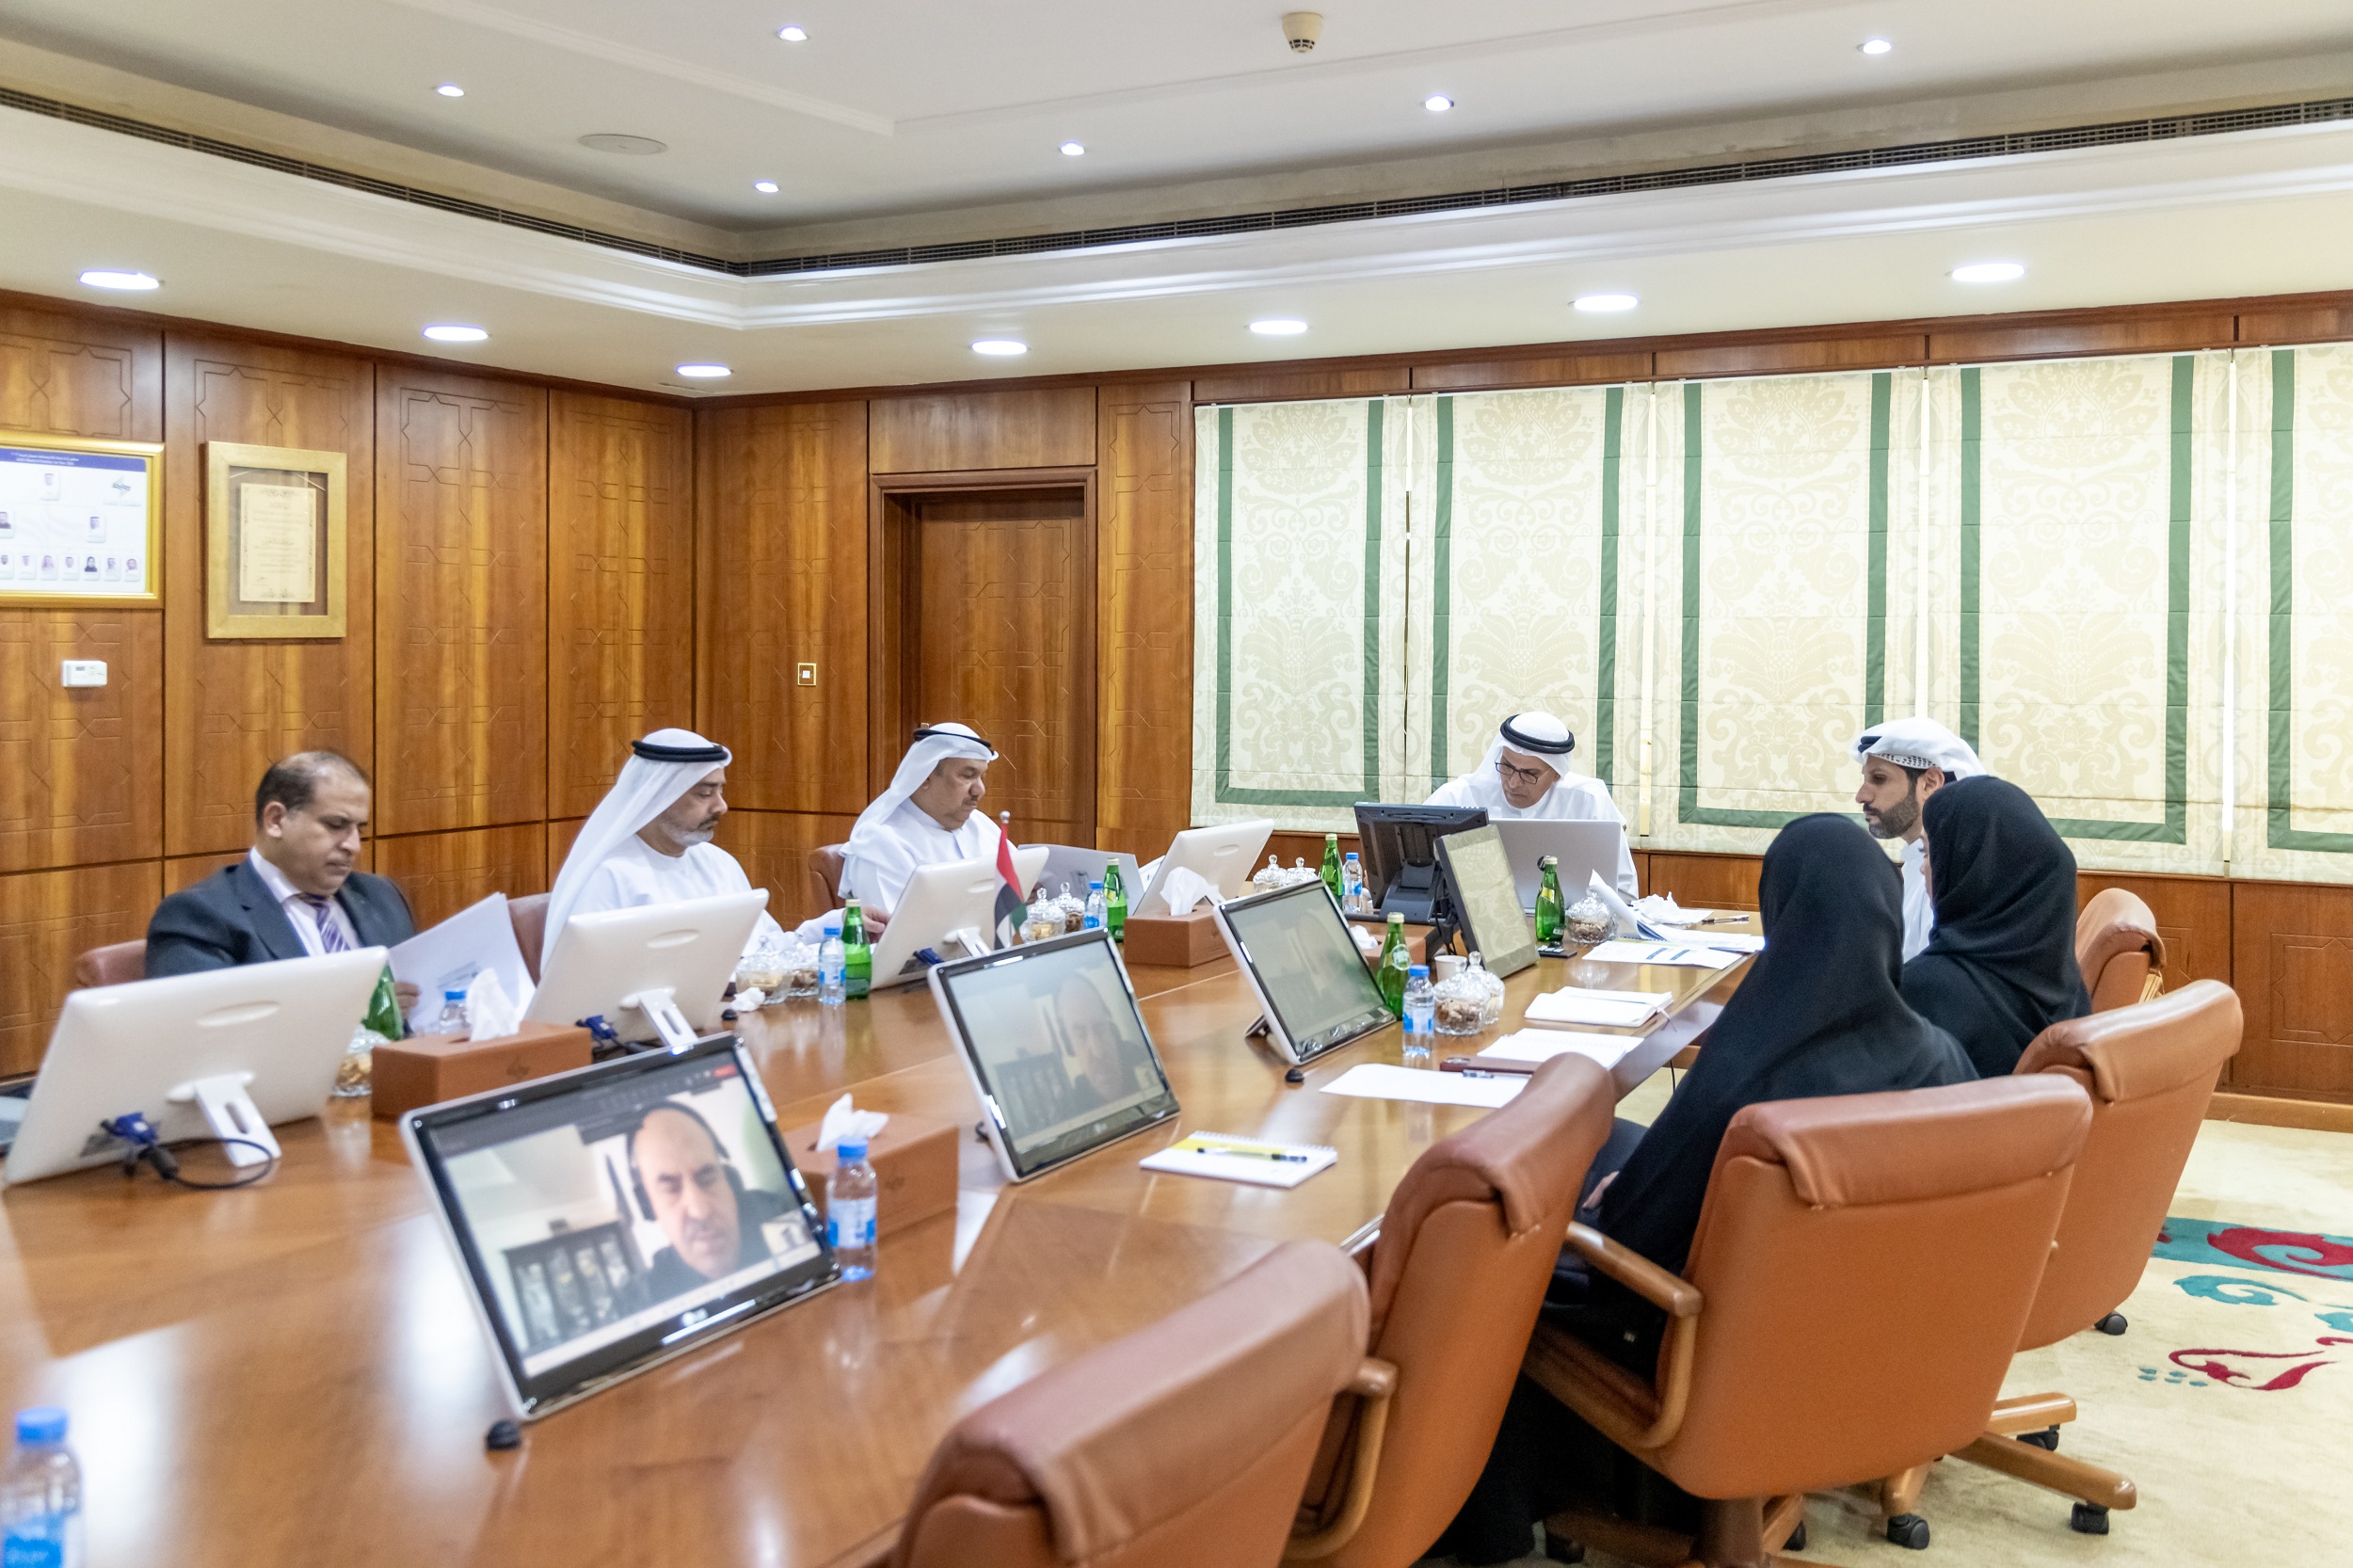 لجنة مركز عجمان للتوفيق والتحكيم في غرفة عجمان تستعرض خطتها السنوية